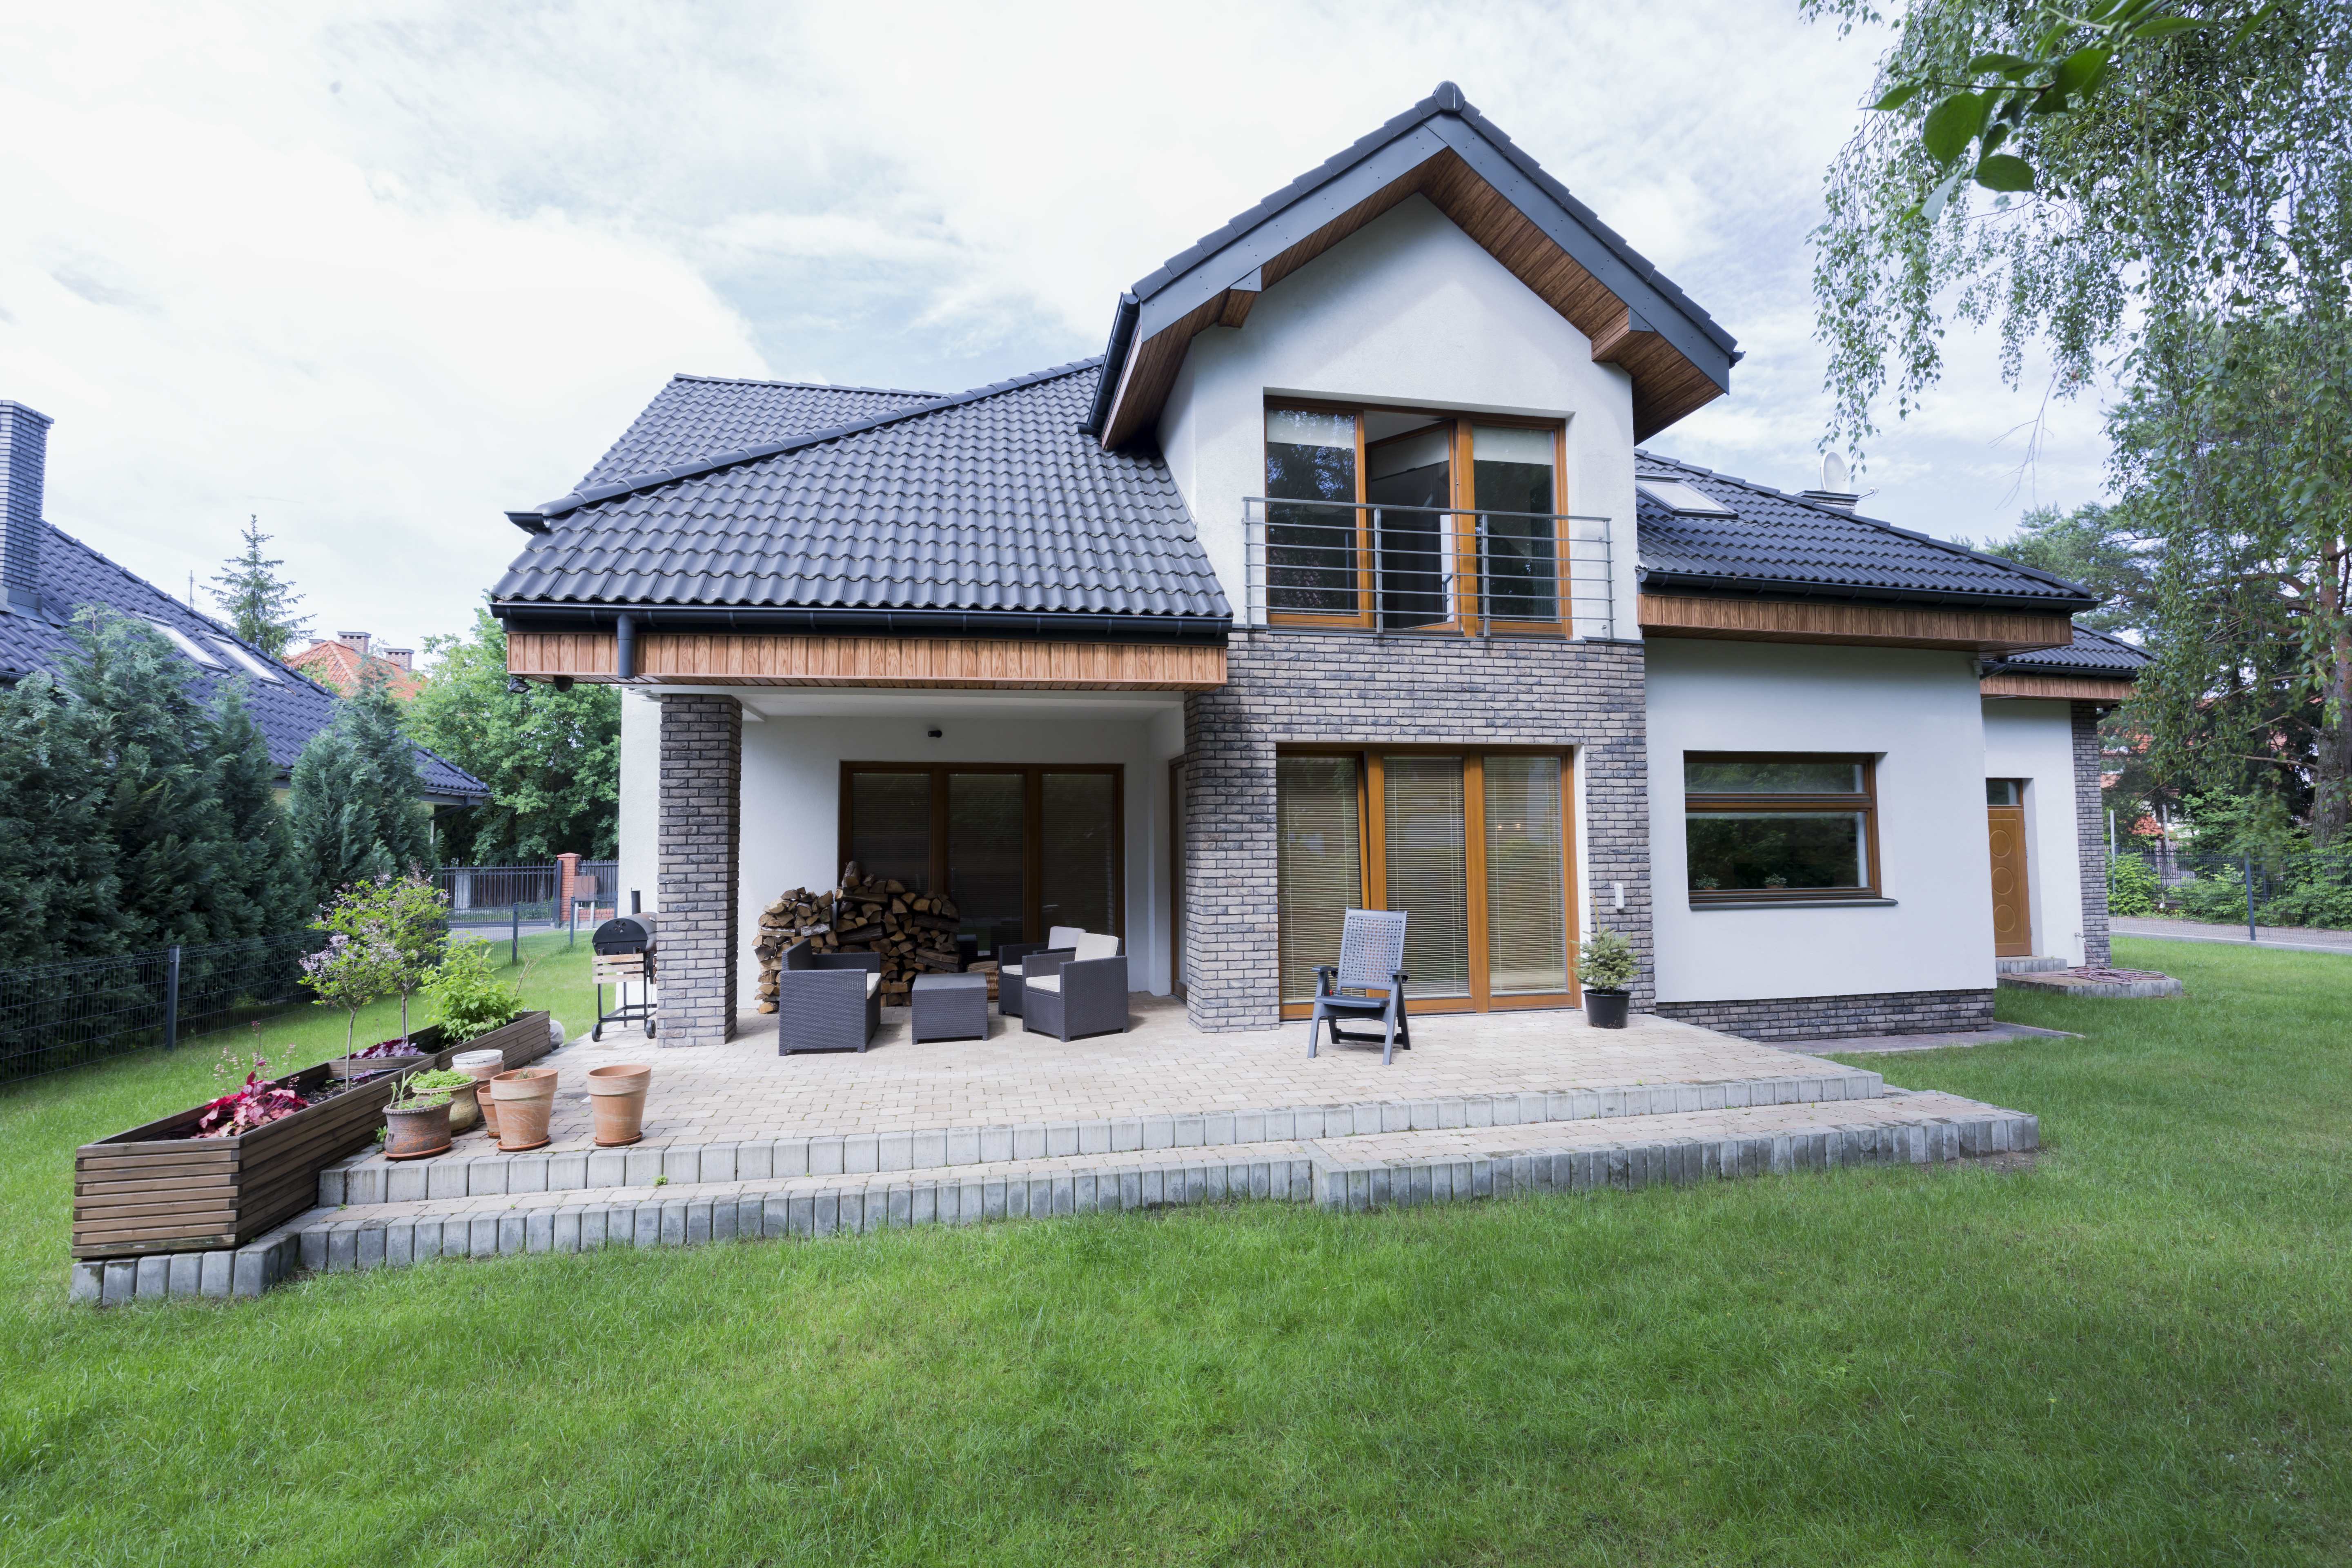 Das Einfamilienhaus zählt zu den beliebtesten Haustypen in Deutschland. Foto bialasiewicz via Envato